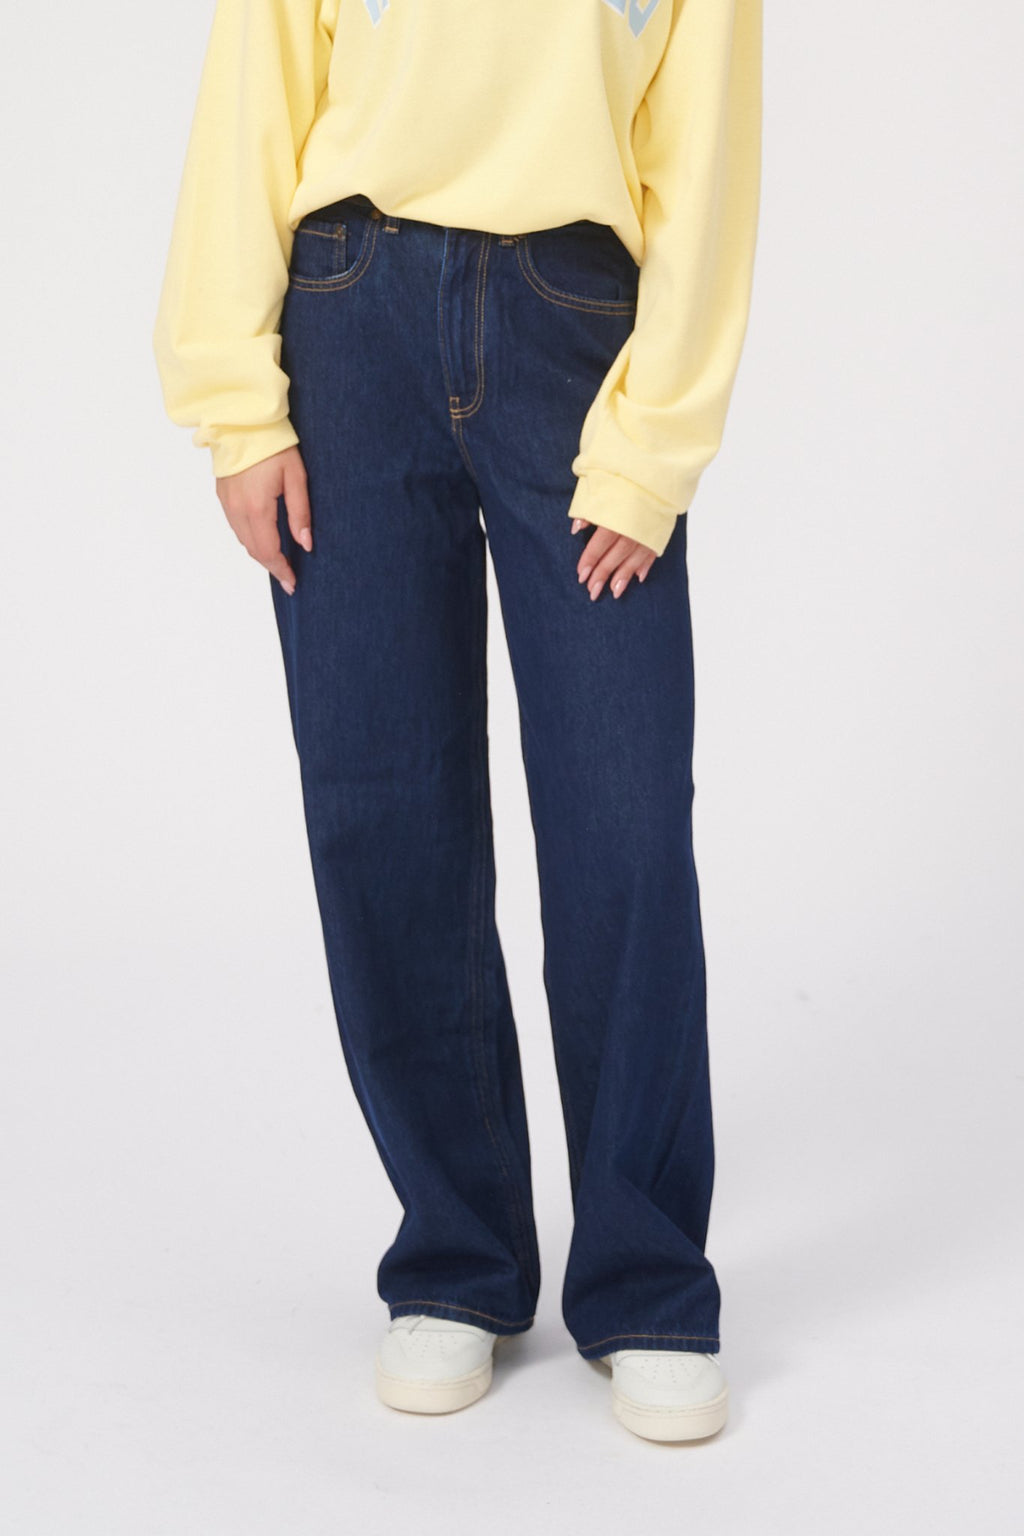 Los jeans amplios de rendimiento originales - paquete (2 pcs).